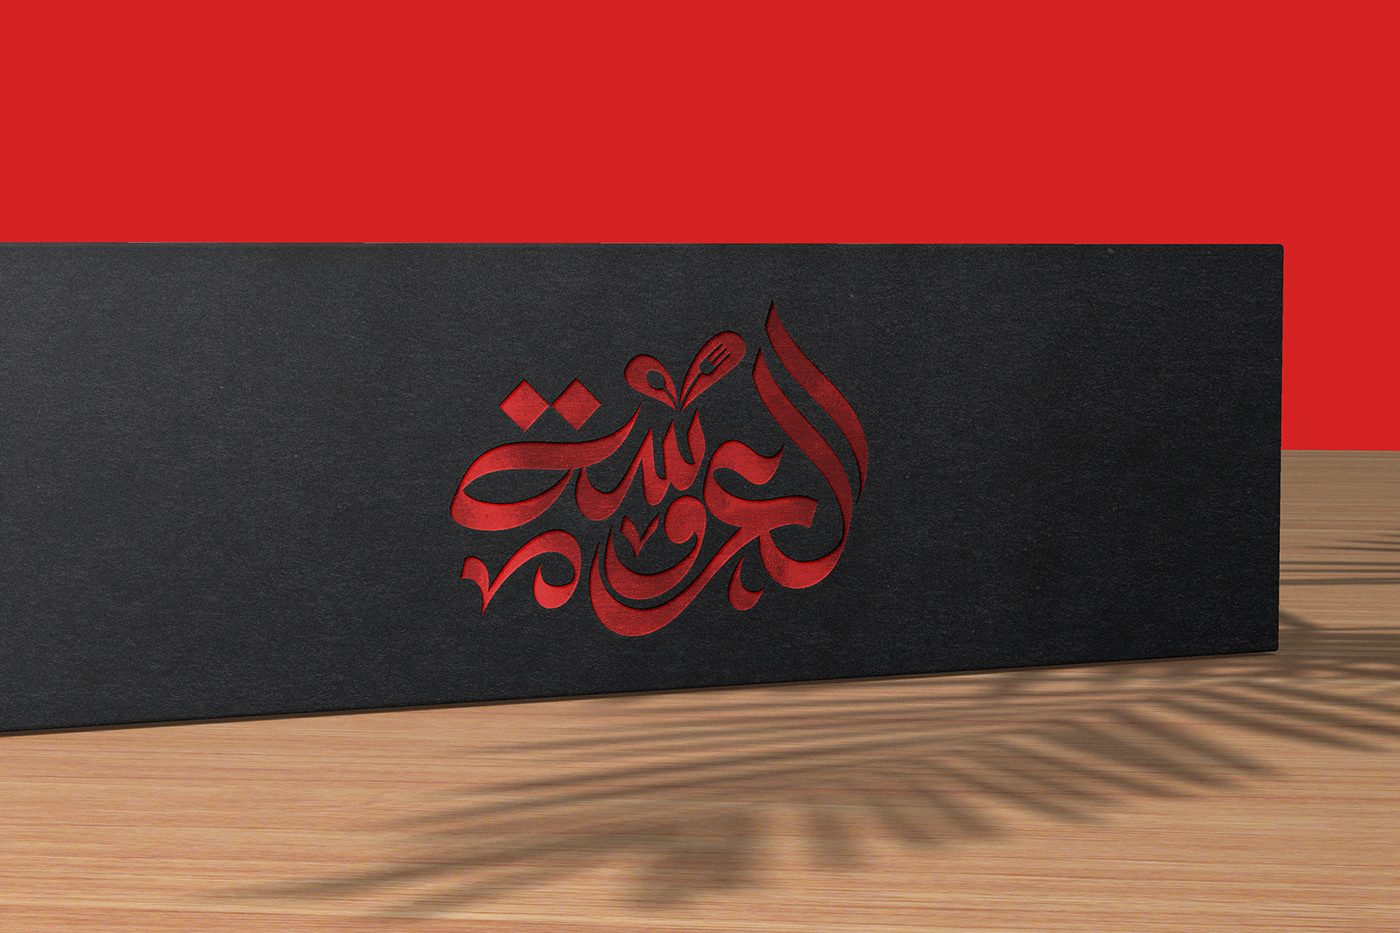 branding  Logo Design brand identity logos typography   Logotype Calligraphy   تايبوجرافي كاليجرافي خط عربي